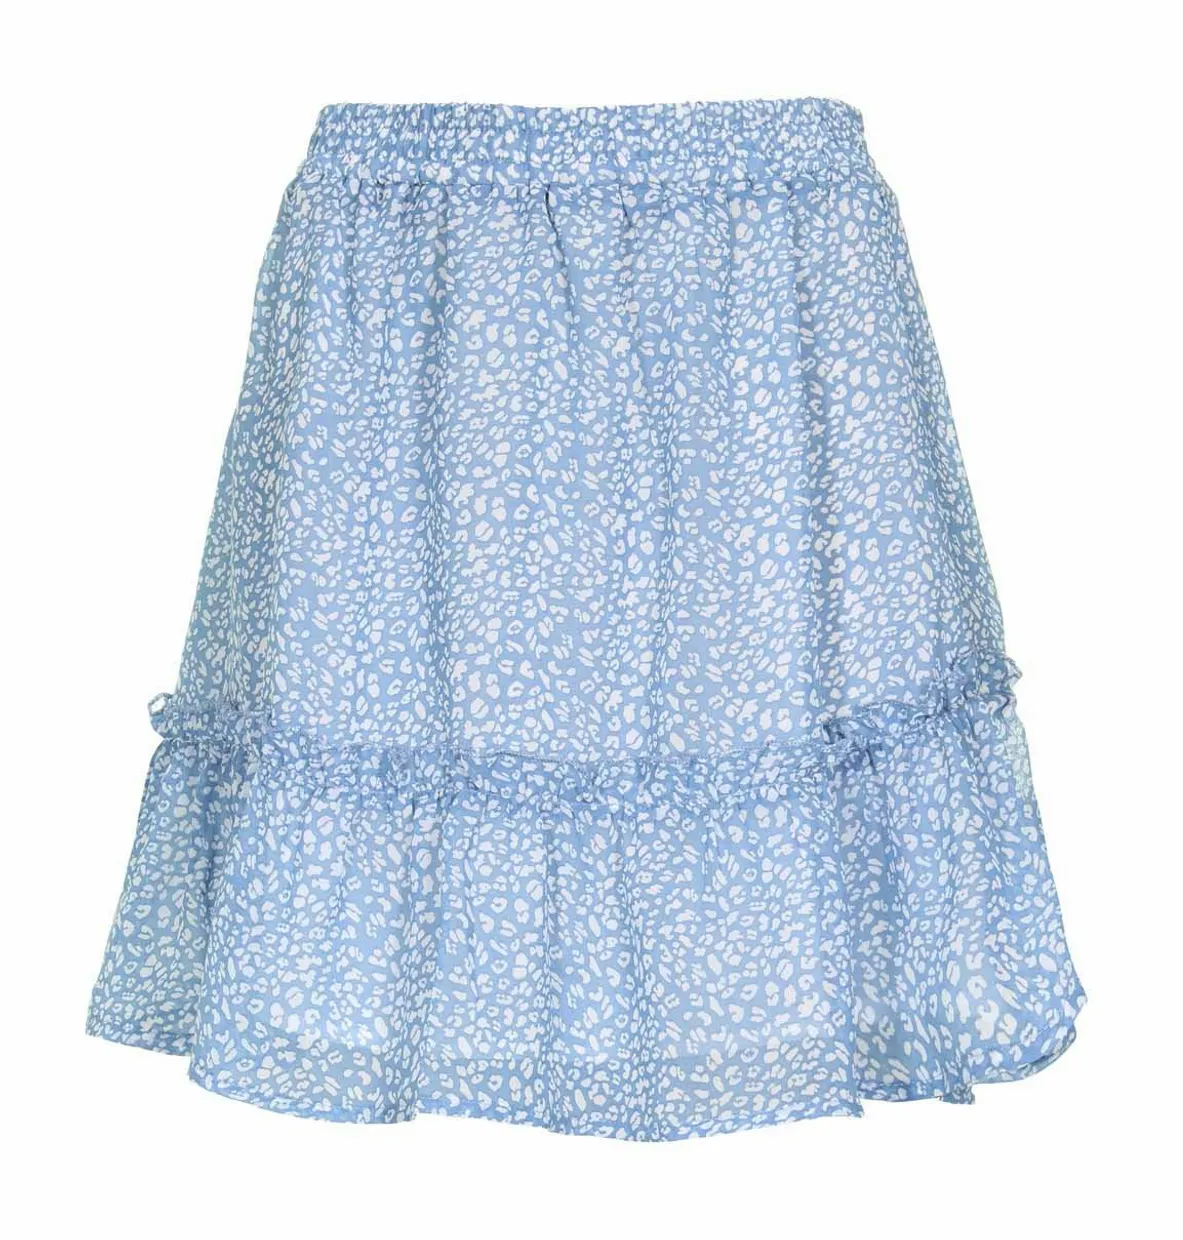 Vivian skirt mid blue white